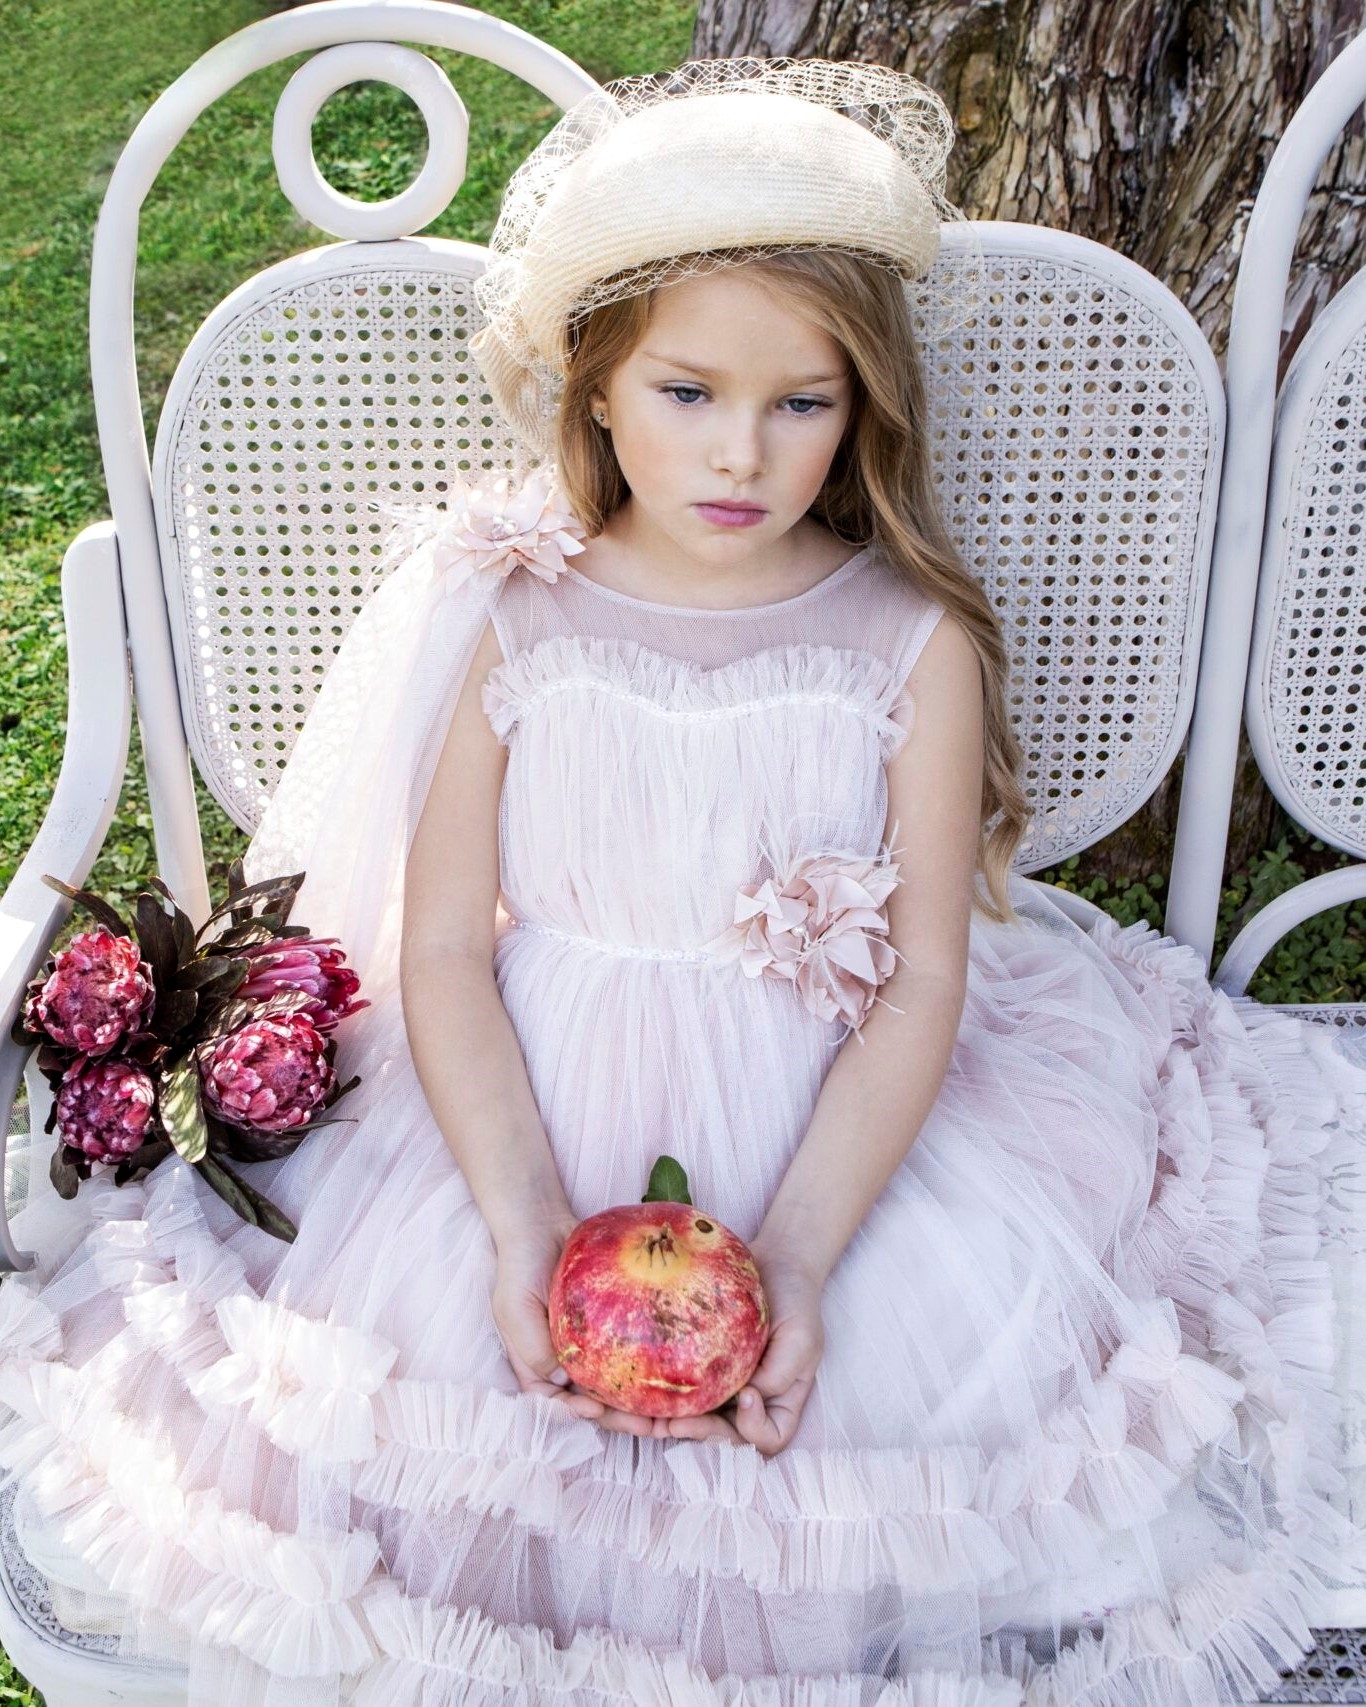 βαπτιστικά ρούχα για κορίτσι baby bloom σάπιο μήλο τούλινο ωραίο ρομαντικό καλοκαίρι βάπτιση λουλούδια : 1